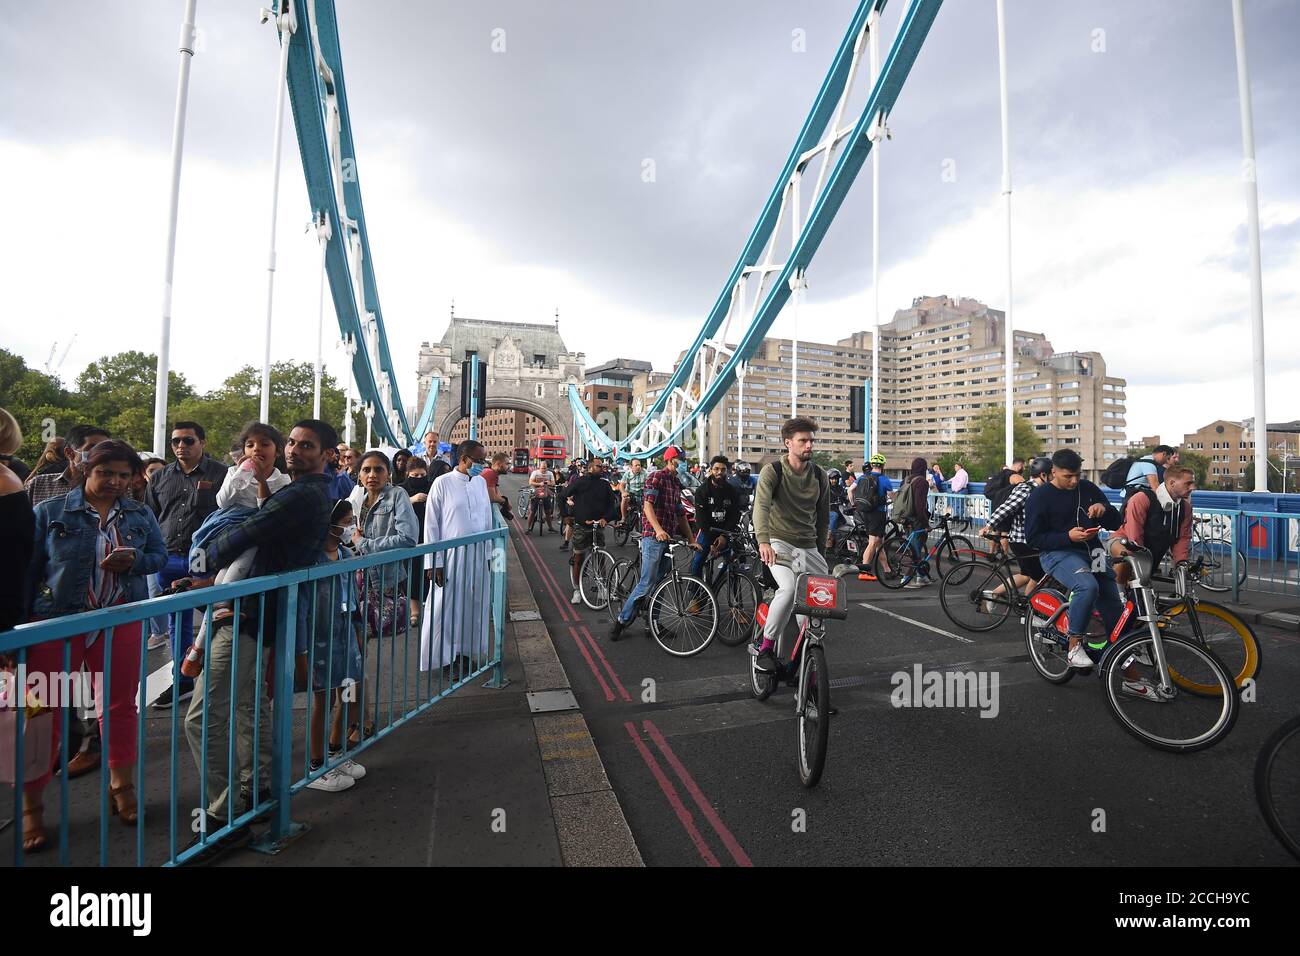 Les gens qui attendent à l'approche de Tower Bridge à Londres, après que le pont est resté bloqué en position ouverte, causant le chaos de la circulation. Banque D'Images